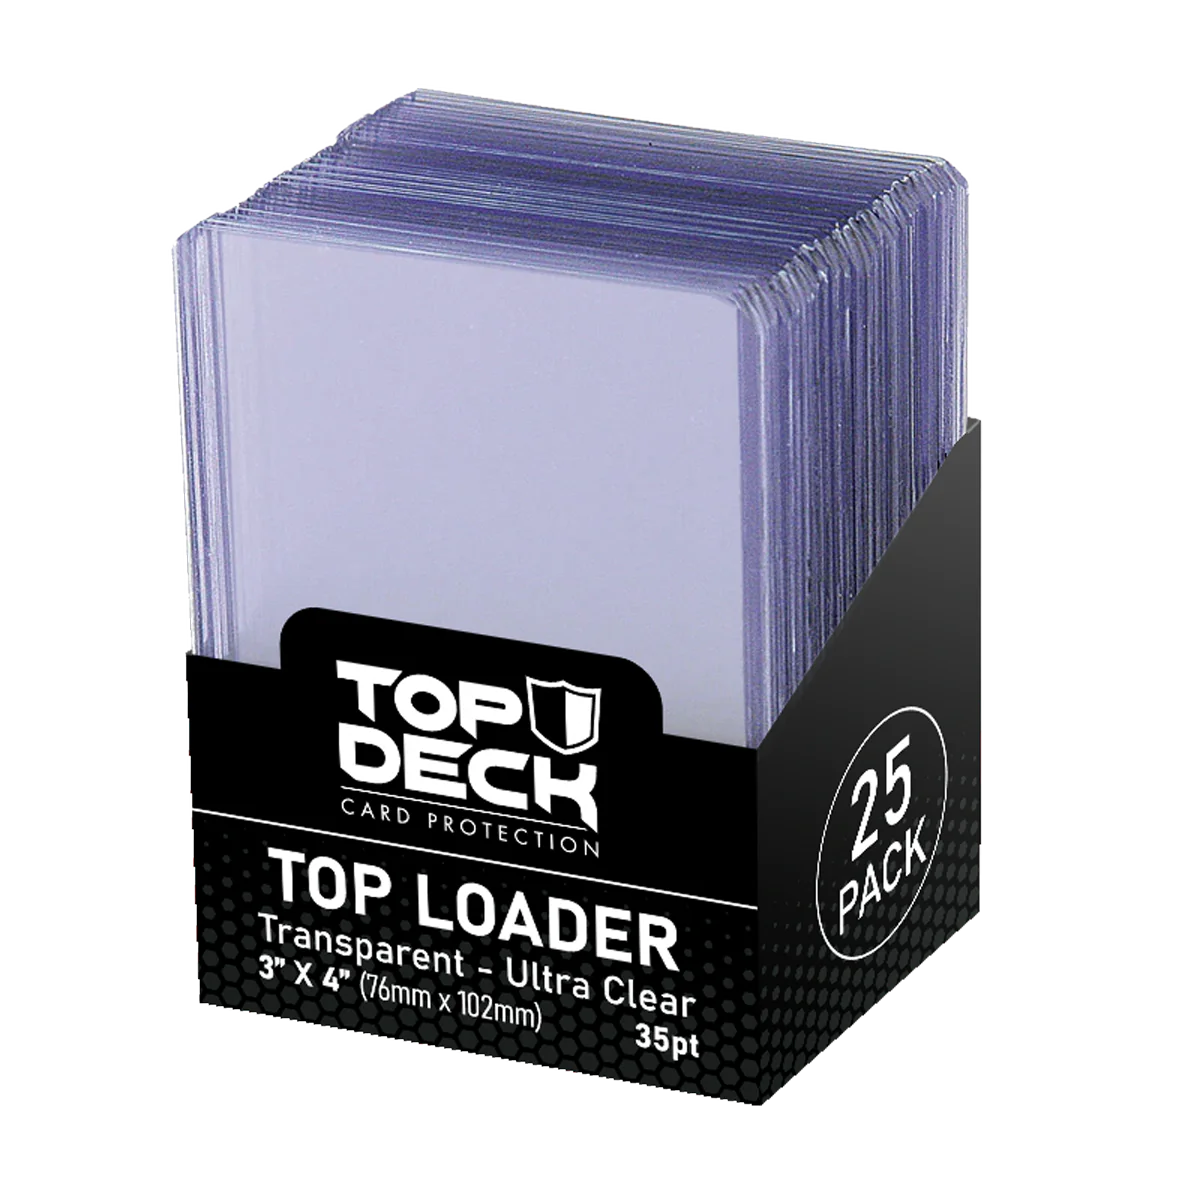 TopLoader Top Deck pack 25